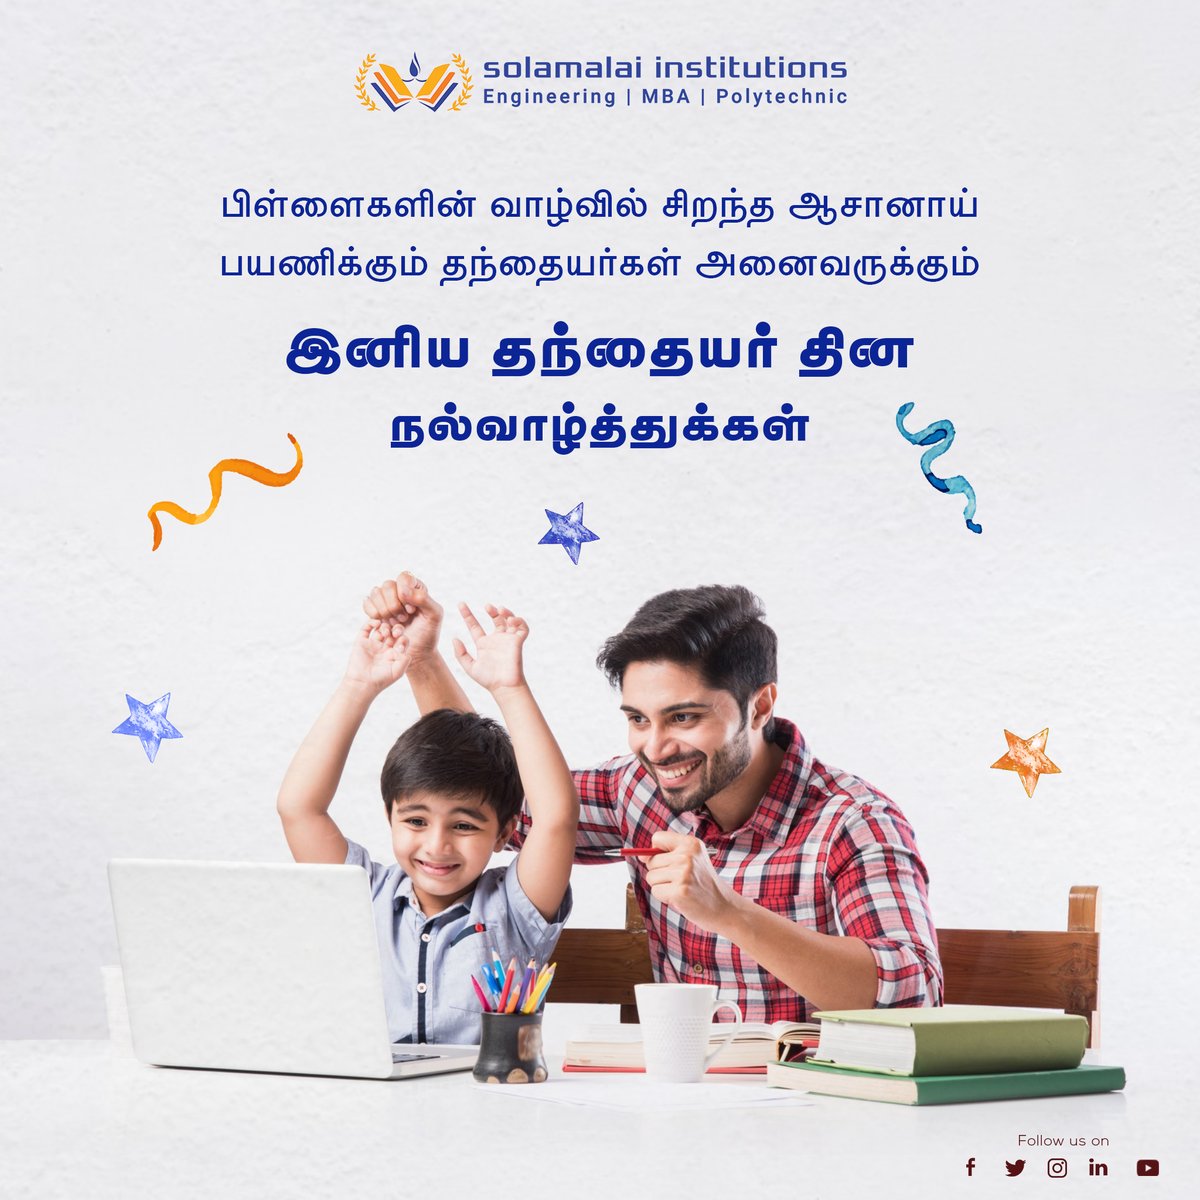 பிள்ளைகளின் வாழ்வில் சிறந்த ஆசானாய் பயணிக்கும்  தந்தையர்கள் அனைவருக்கும்  இனிய தந்தையர் தின நல்வாழ்த்துக்கள்   

#solamalaiinstitution #happyfathersday #fathersday2023 #MBA #MechanicalEngineering  #Madurai #Solamalai #ComputerScienceEngineering #ElectricalEngineering #Polytechnic